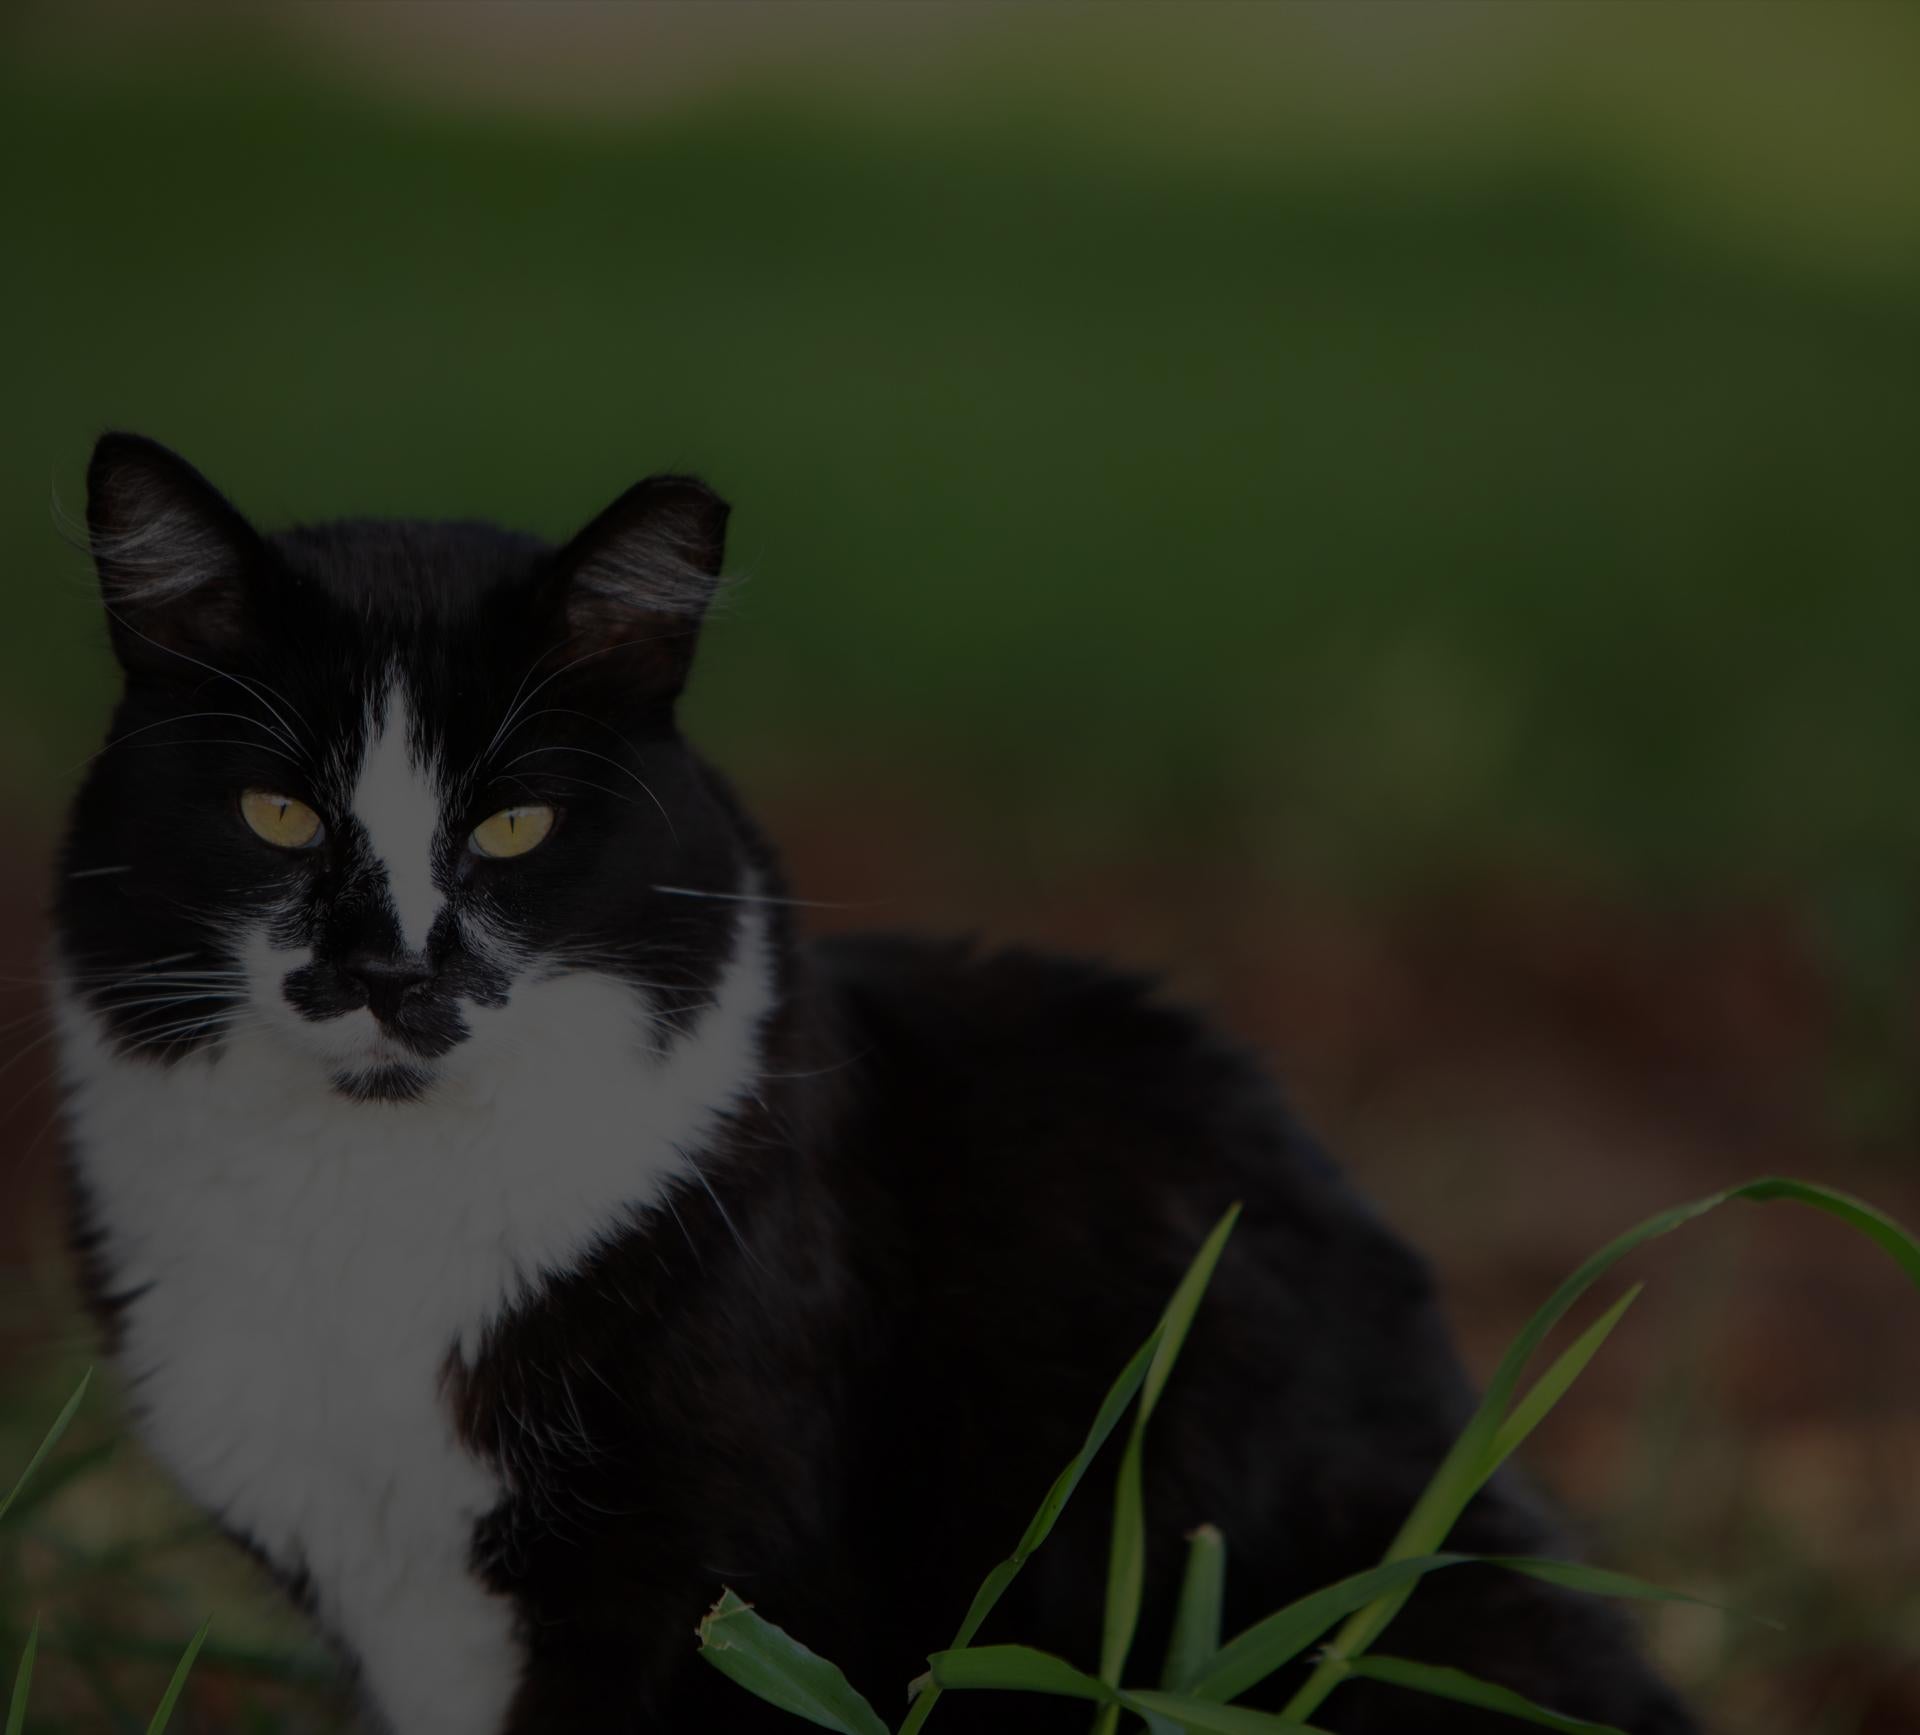 Ear tipped cat in a field in Utah